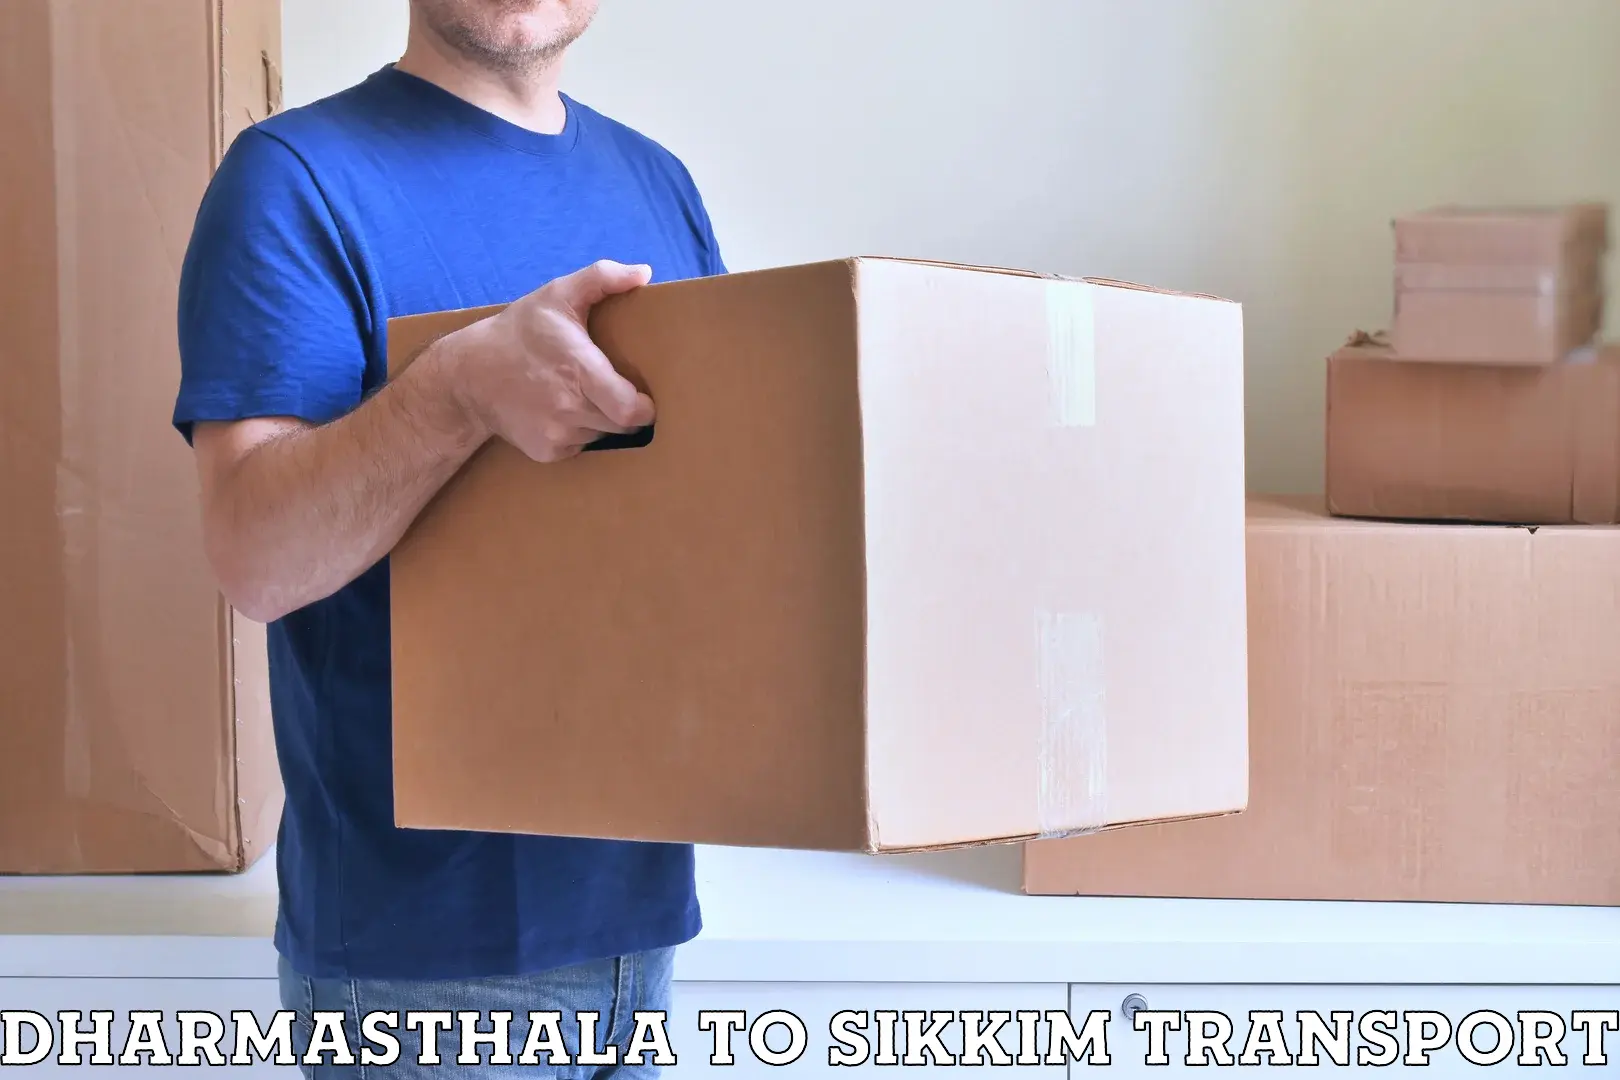 Furniture transport service Dharmasthala to Sikkim